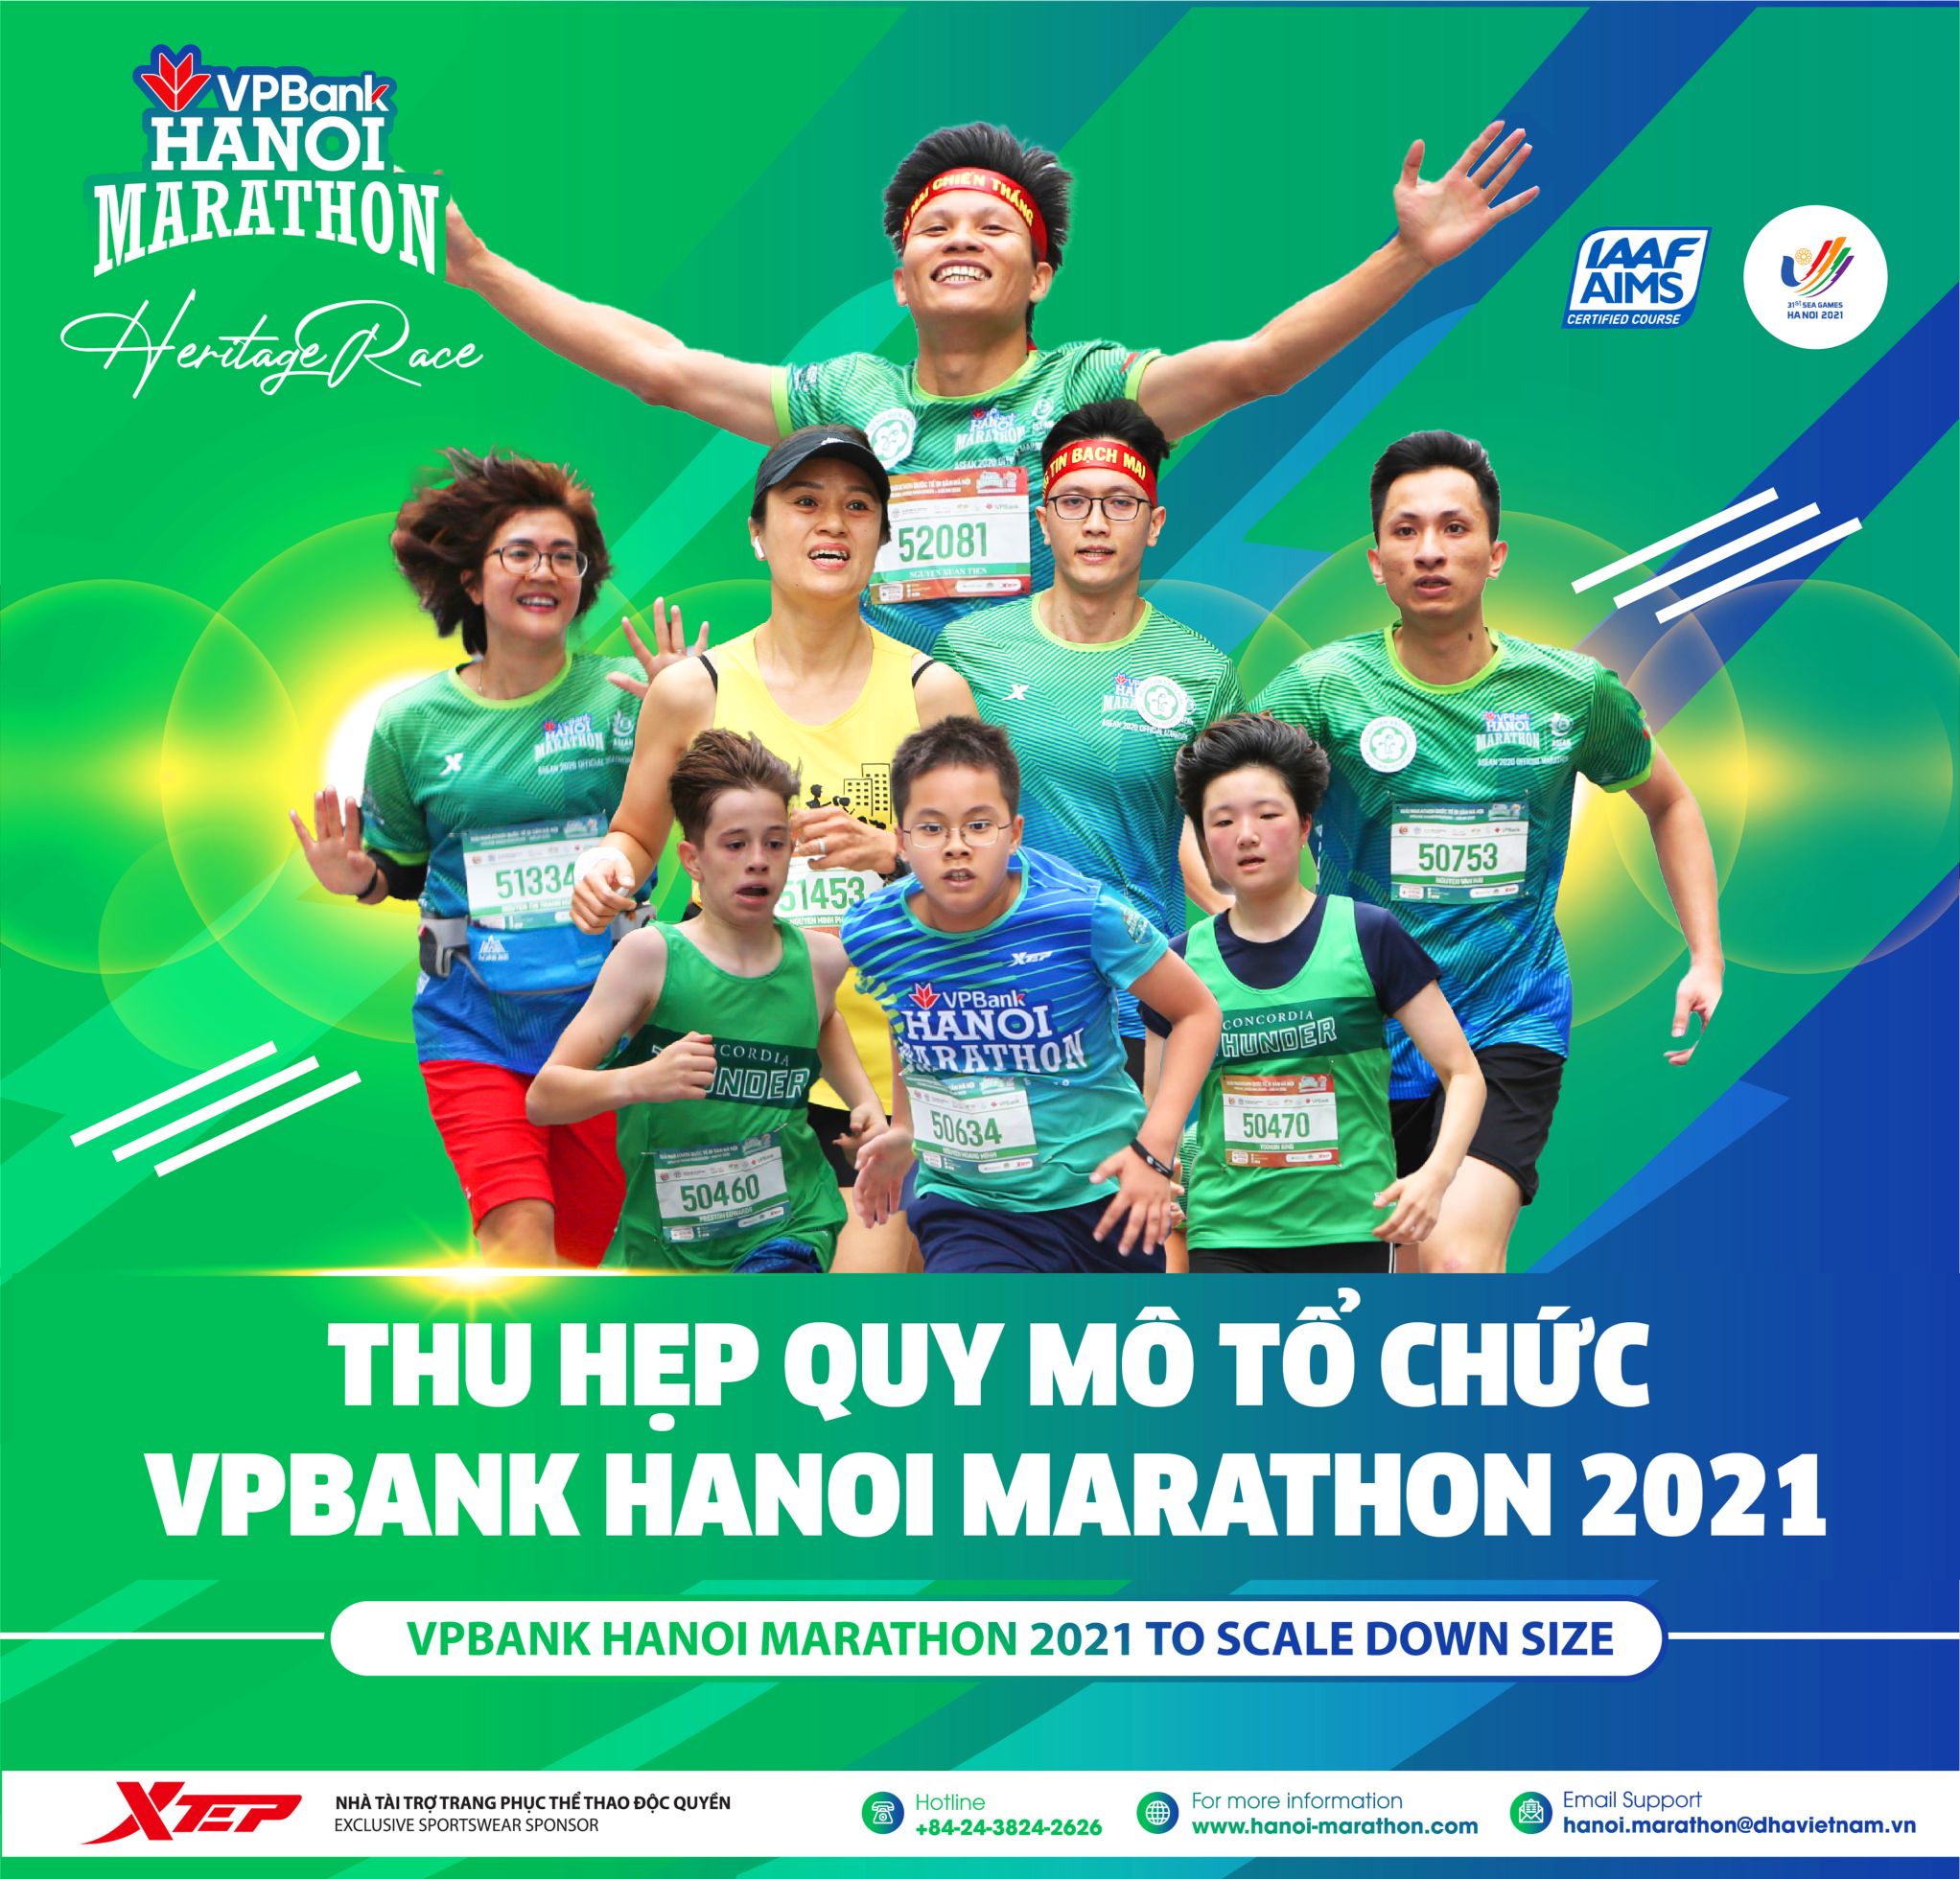 THÔNG CÁO BÁO CHÍ: VPBank Hanoi Marathon 2021 Công Bố Phương Án Tổ Chức Mới